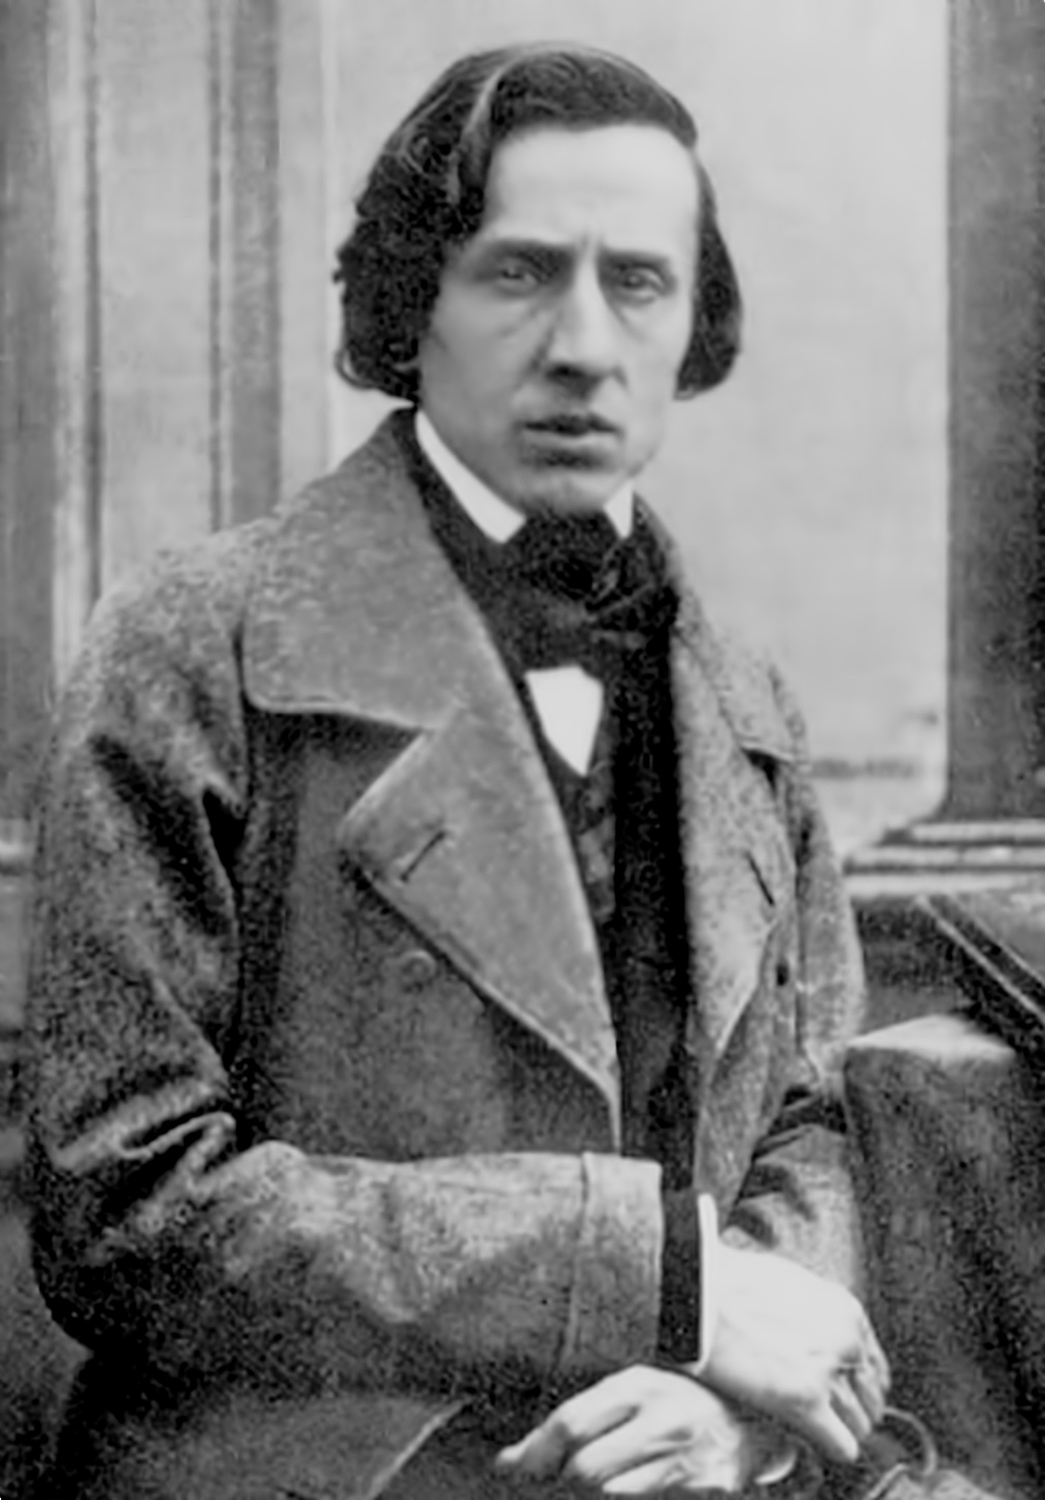 Jedyna fotografia F. Chopina, wykonana prawdopodobnie wiosną 1849 roku przez paryskiego fotografa L.A. Bissona - ze strony https://wielkahistoria.pl/